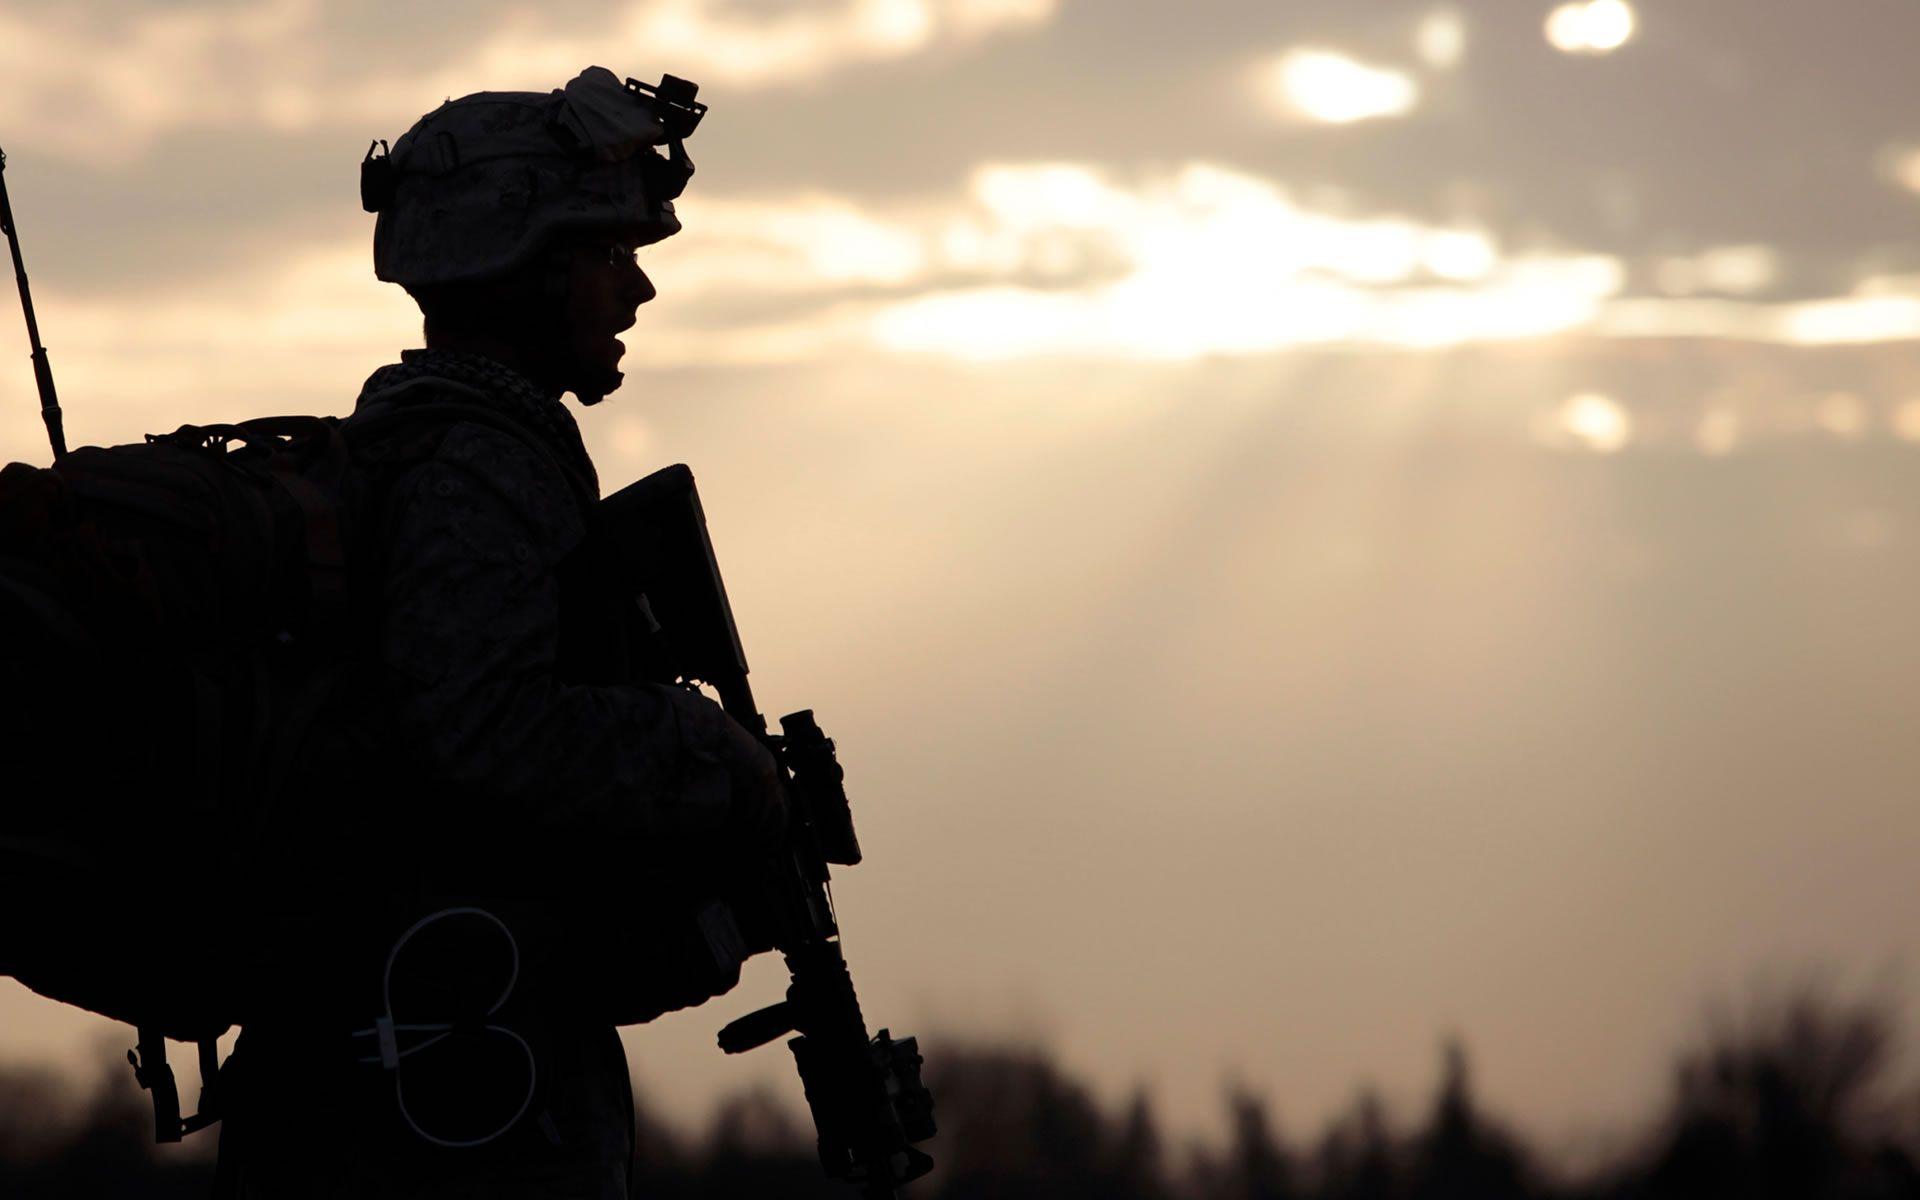 American Soldier in Afghanistan (2153)